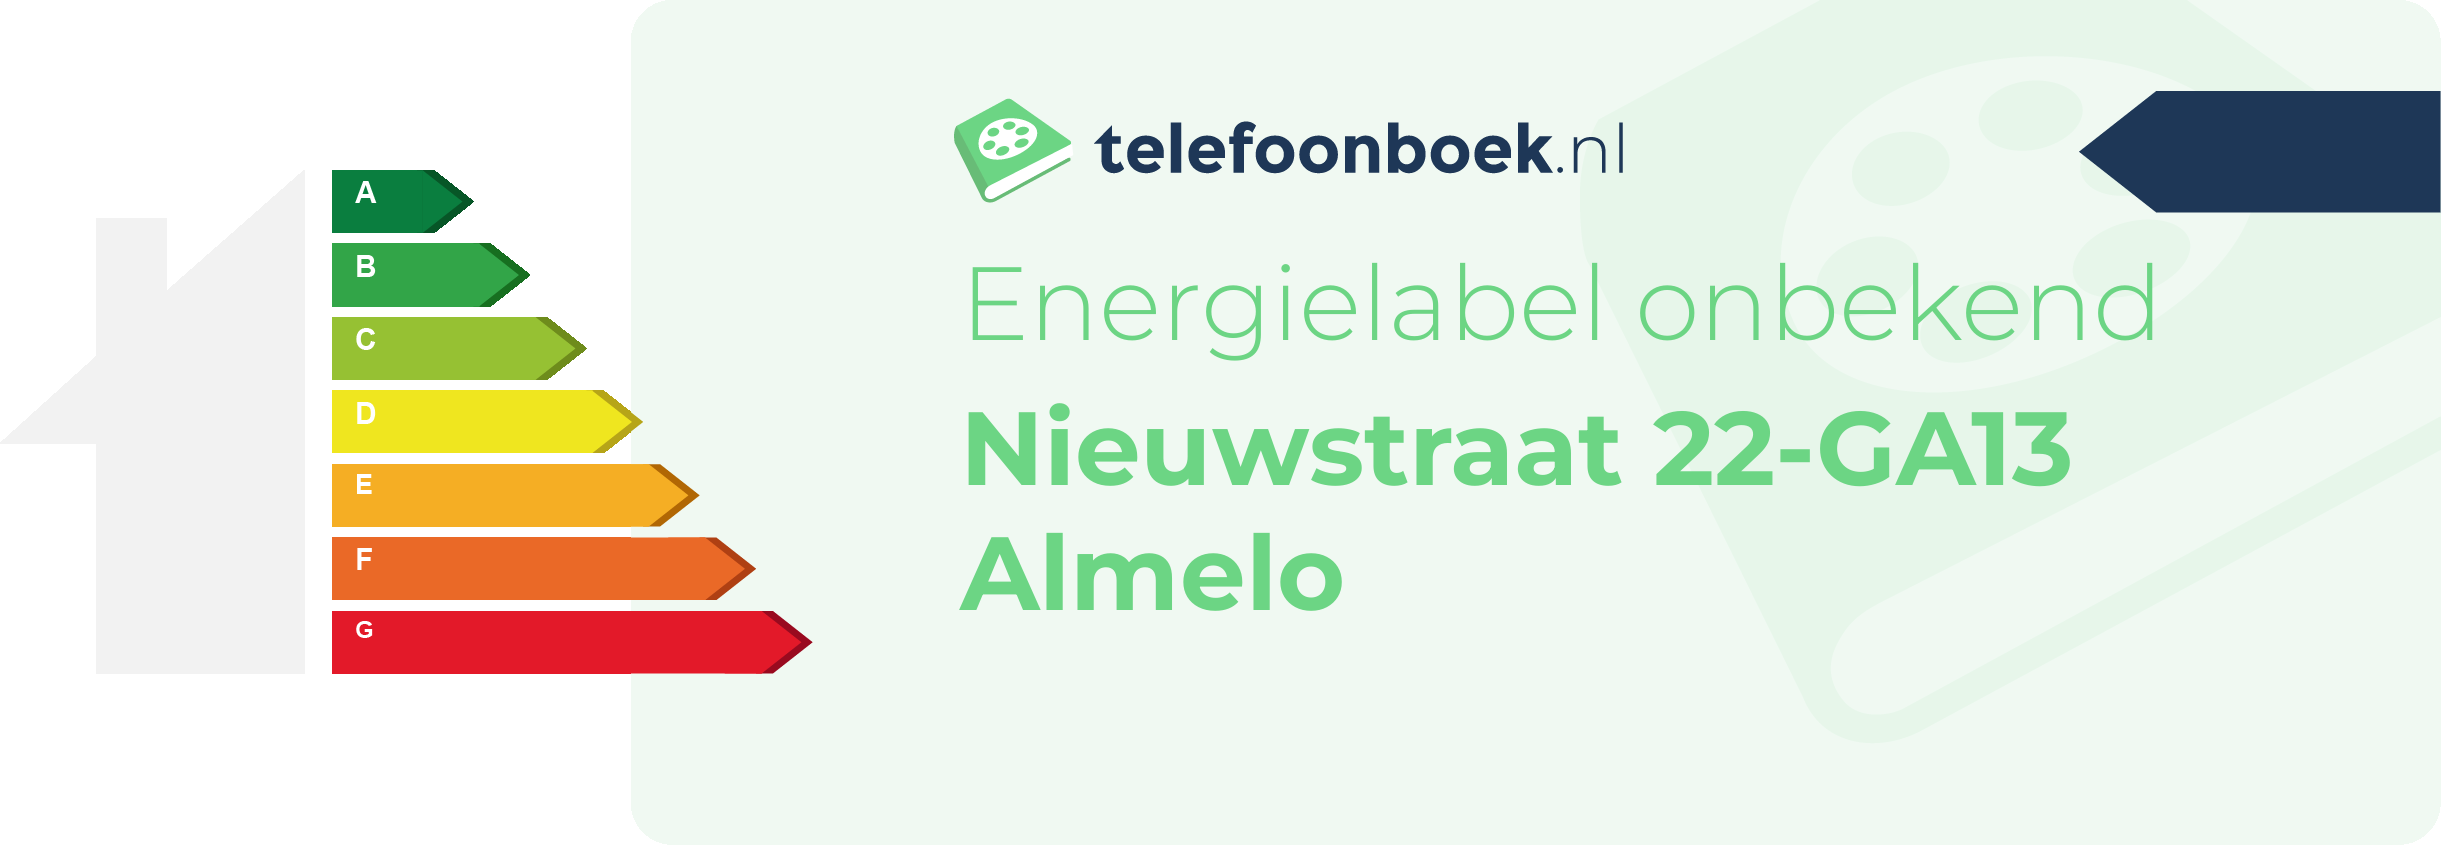 Energielabel Nieuwstraat 22-GA13 Almelo